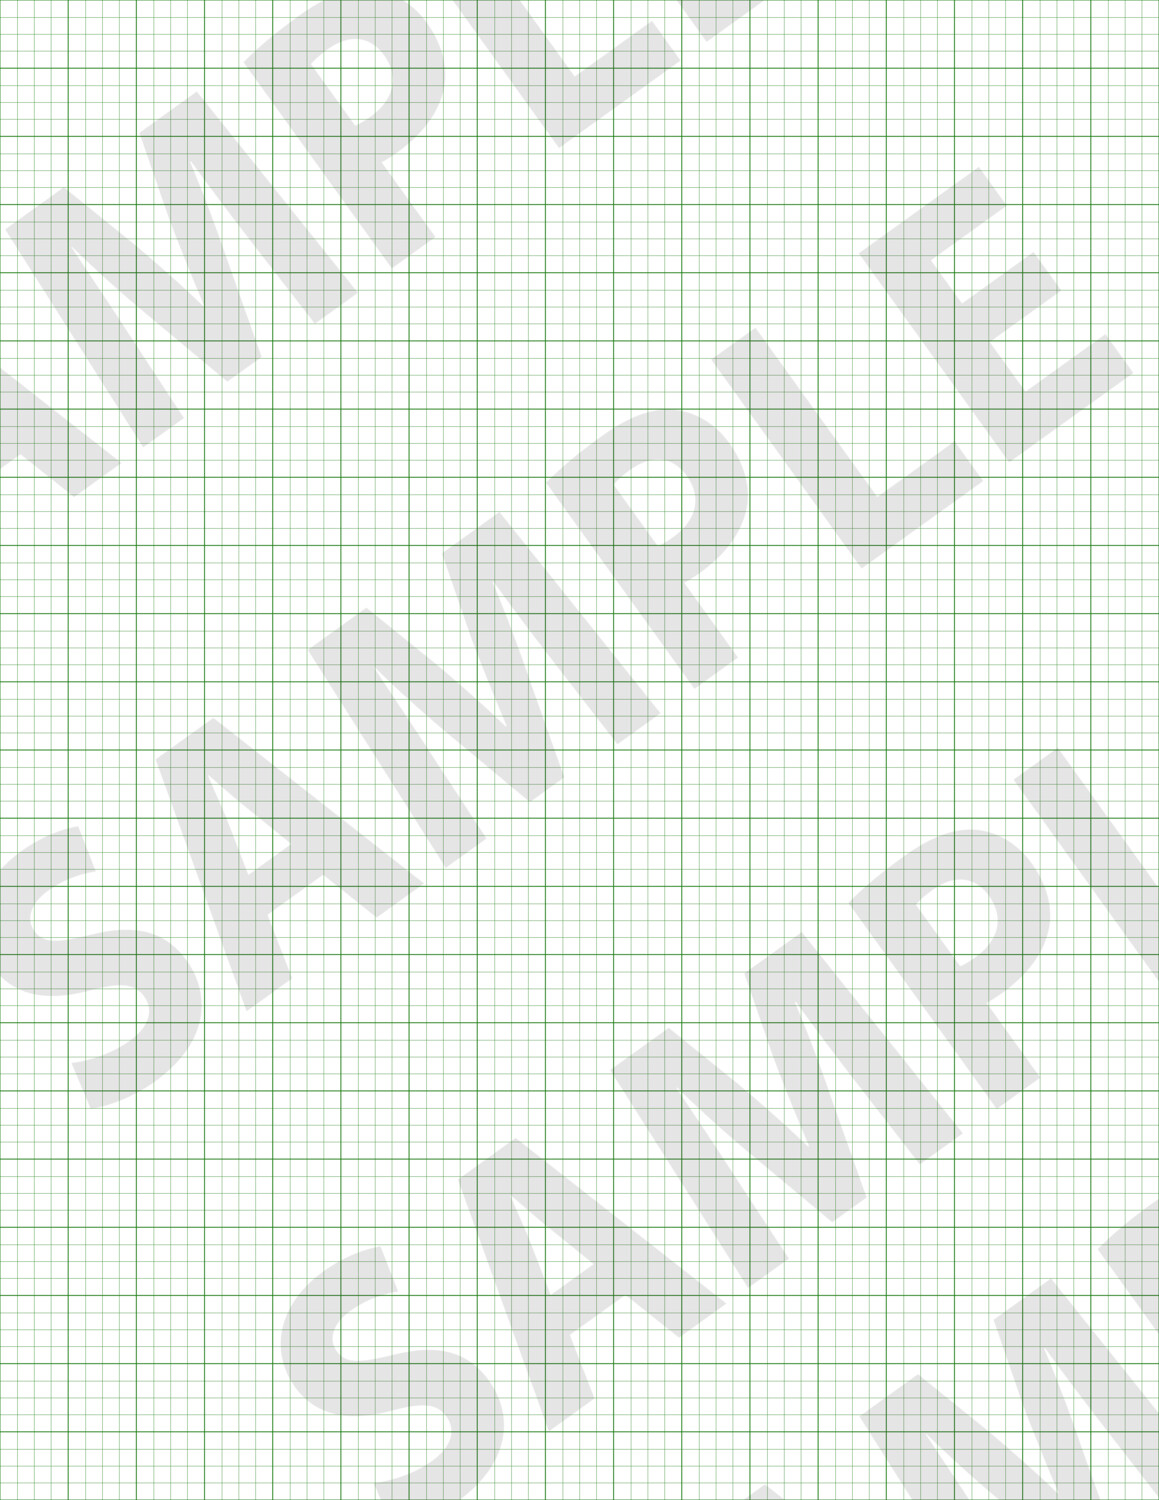 Green 2 - Medium Grid Paper